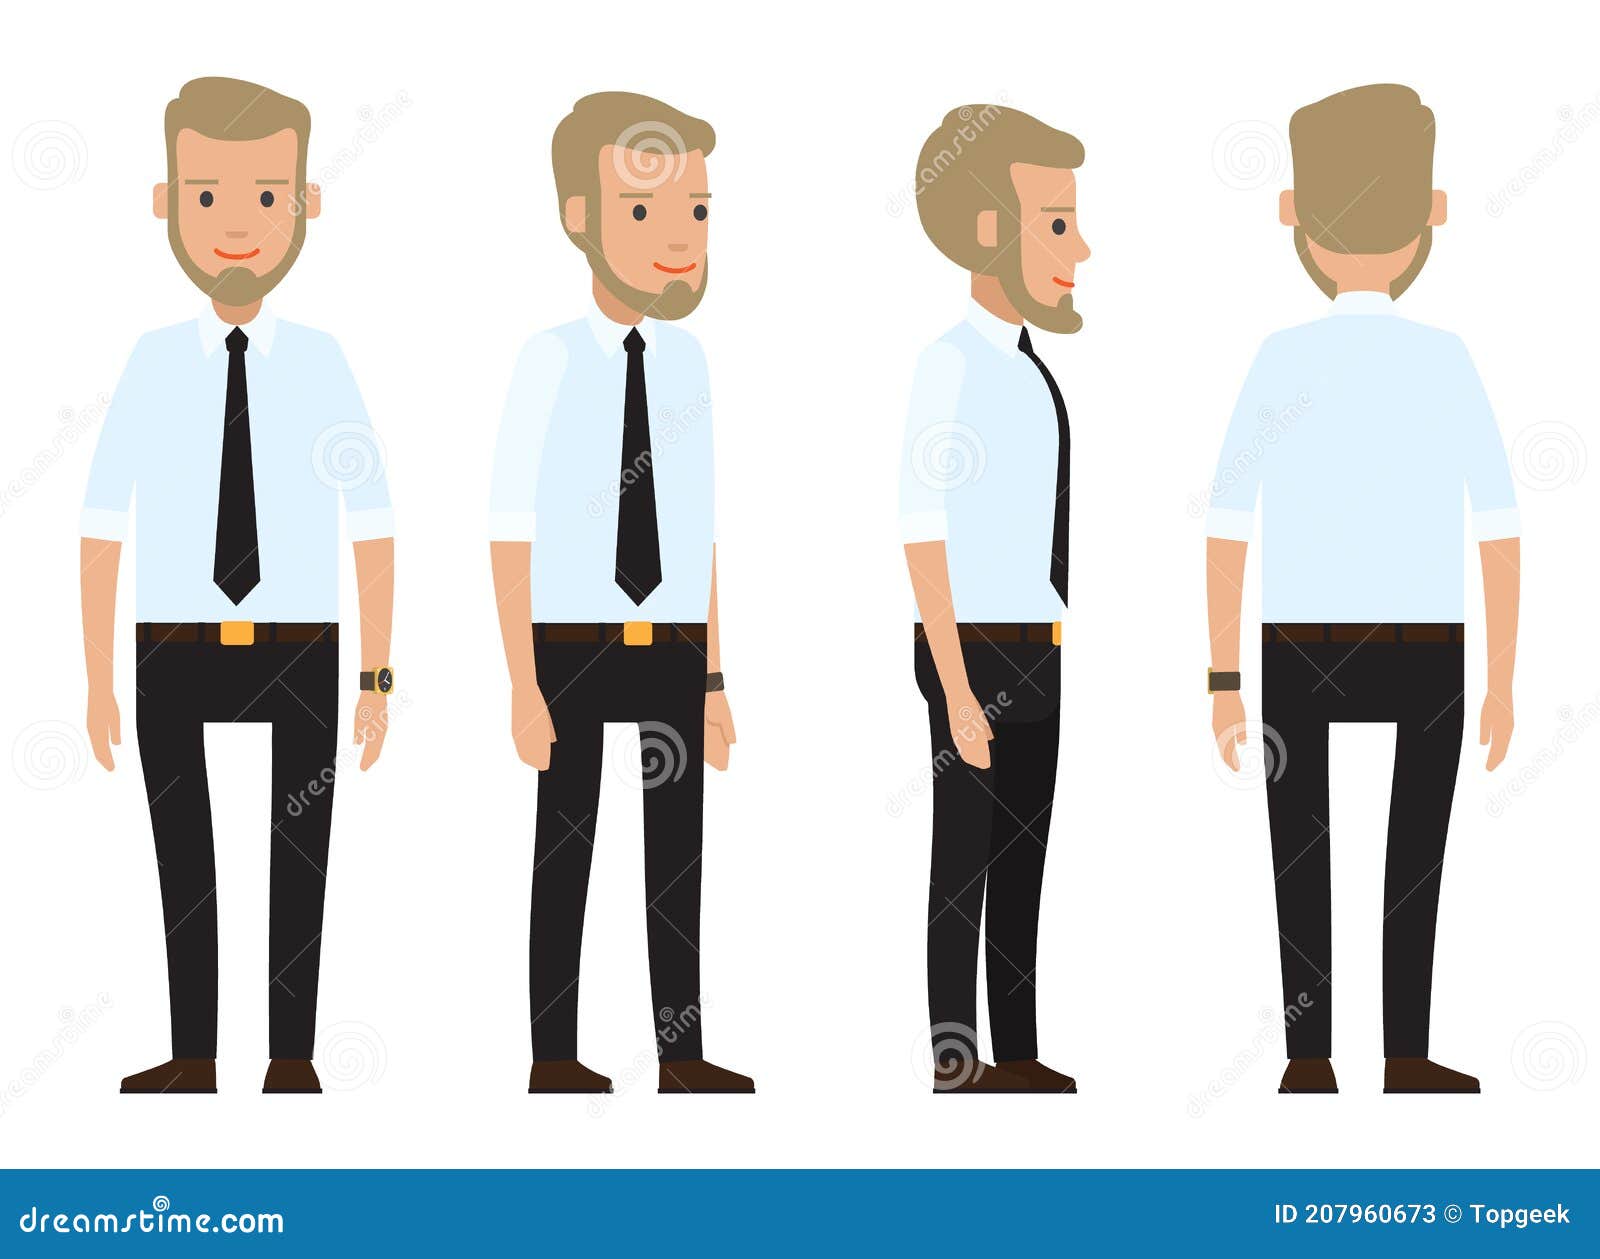 Hombre De Negocios Vestido Traje Con Corbata Negra Camisa Blanca Cinturón Pantalón Negro Parte Trasera Stock de ilustración - Ilustración gente, conjunto: 207960673